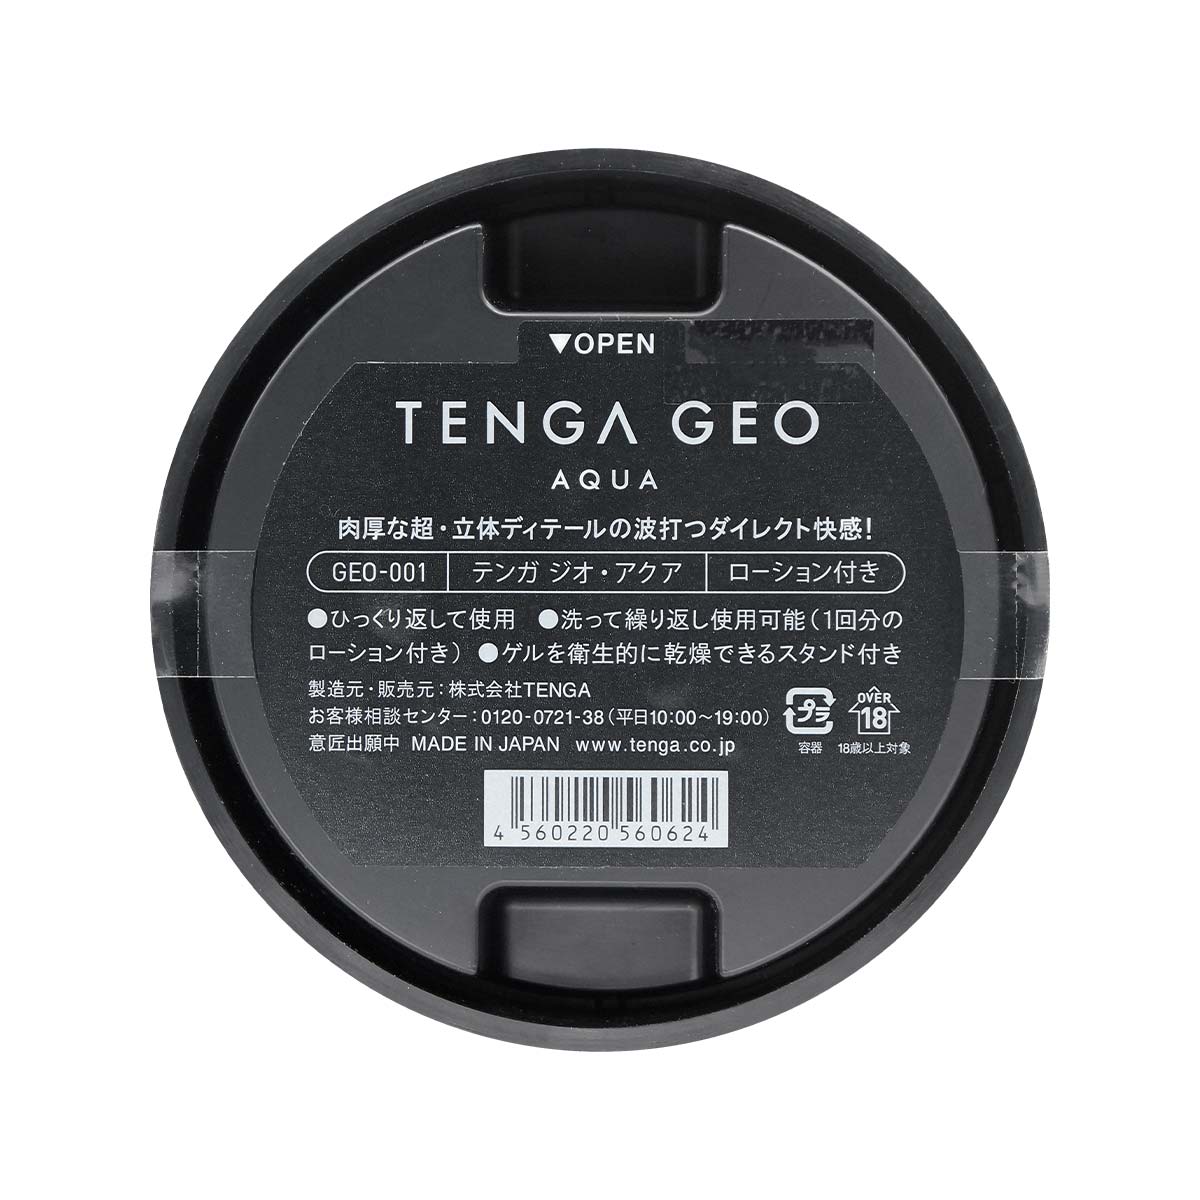 TENGA GEO AQUA 水紋球-TENGA-TENGA 香港網上專門店 - 專營 TENGA 飛機杯及潤滑劑